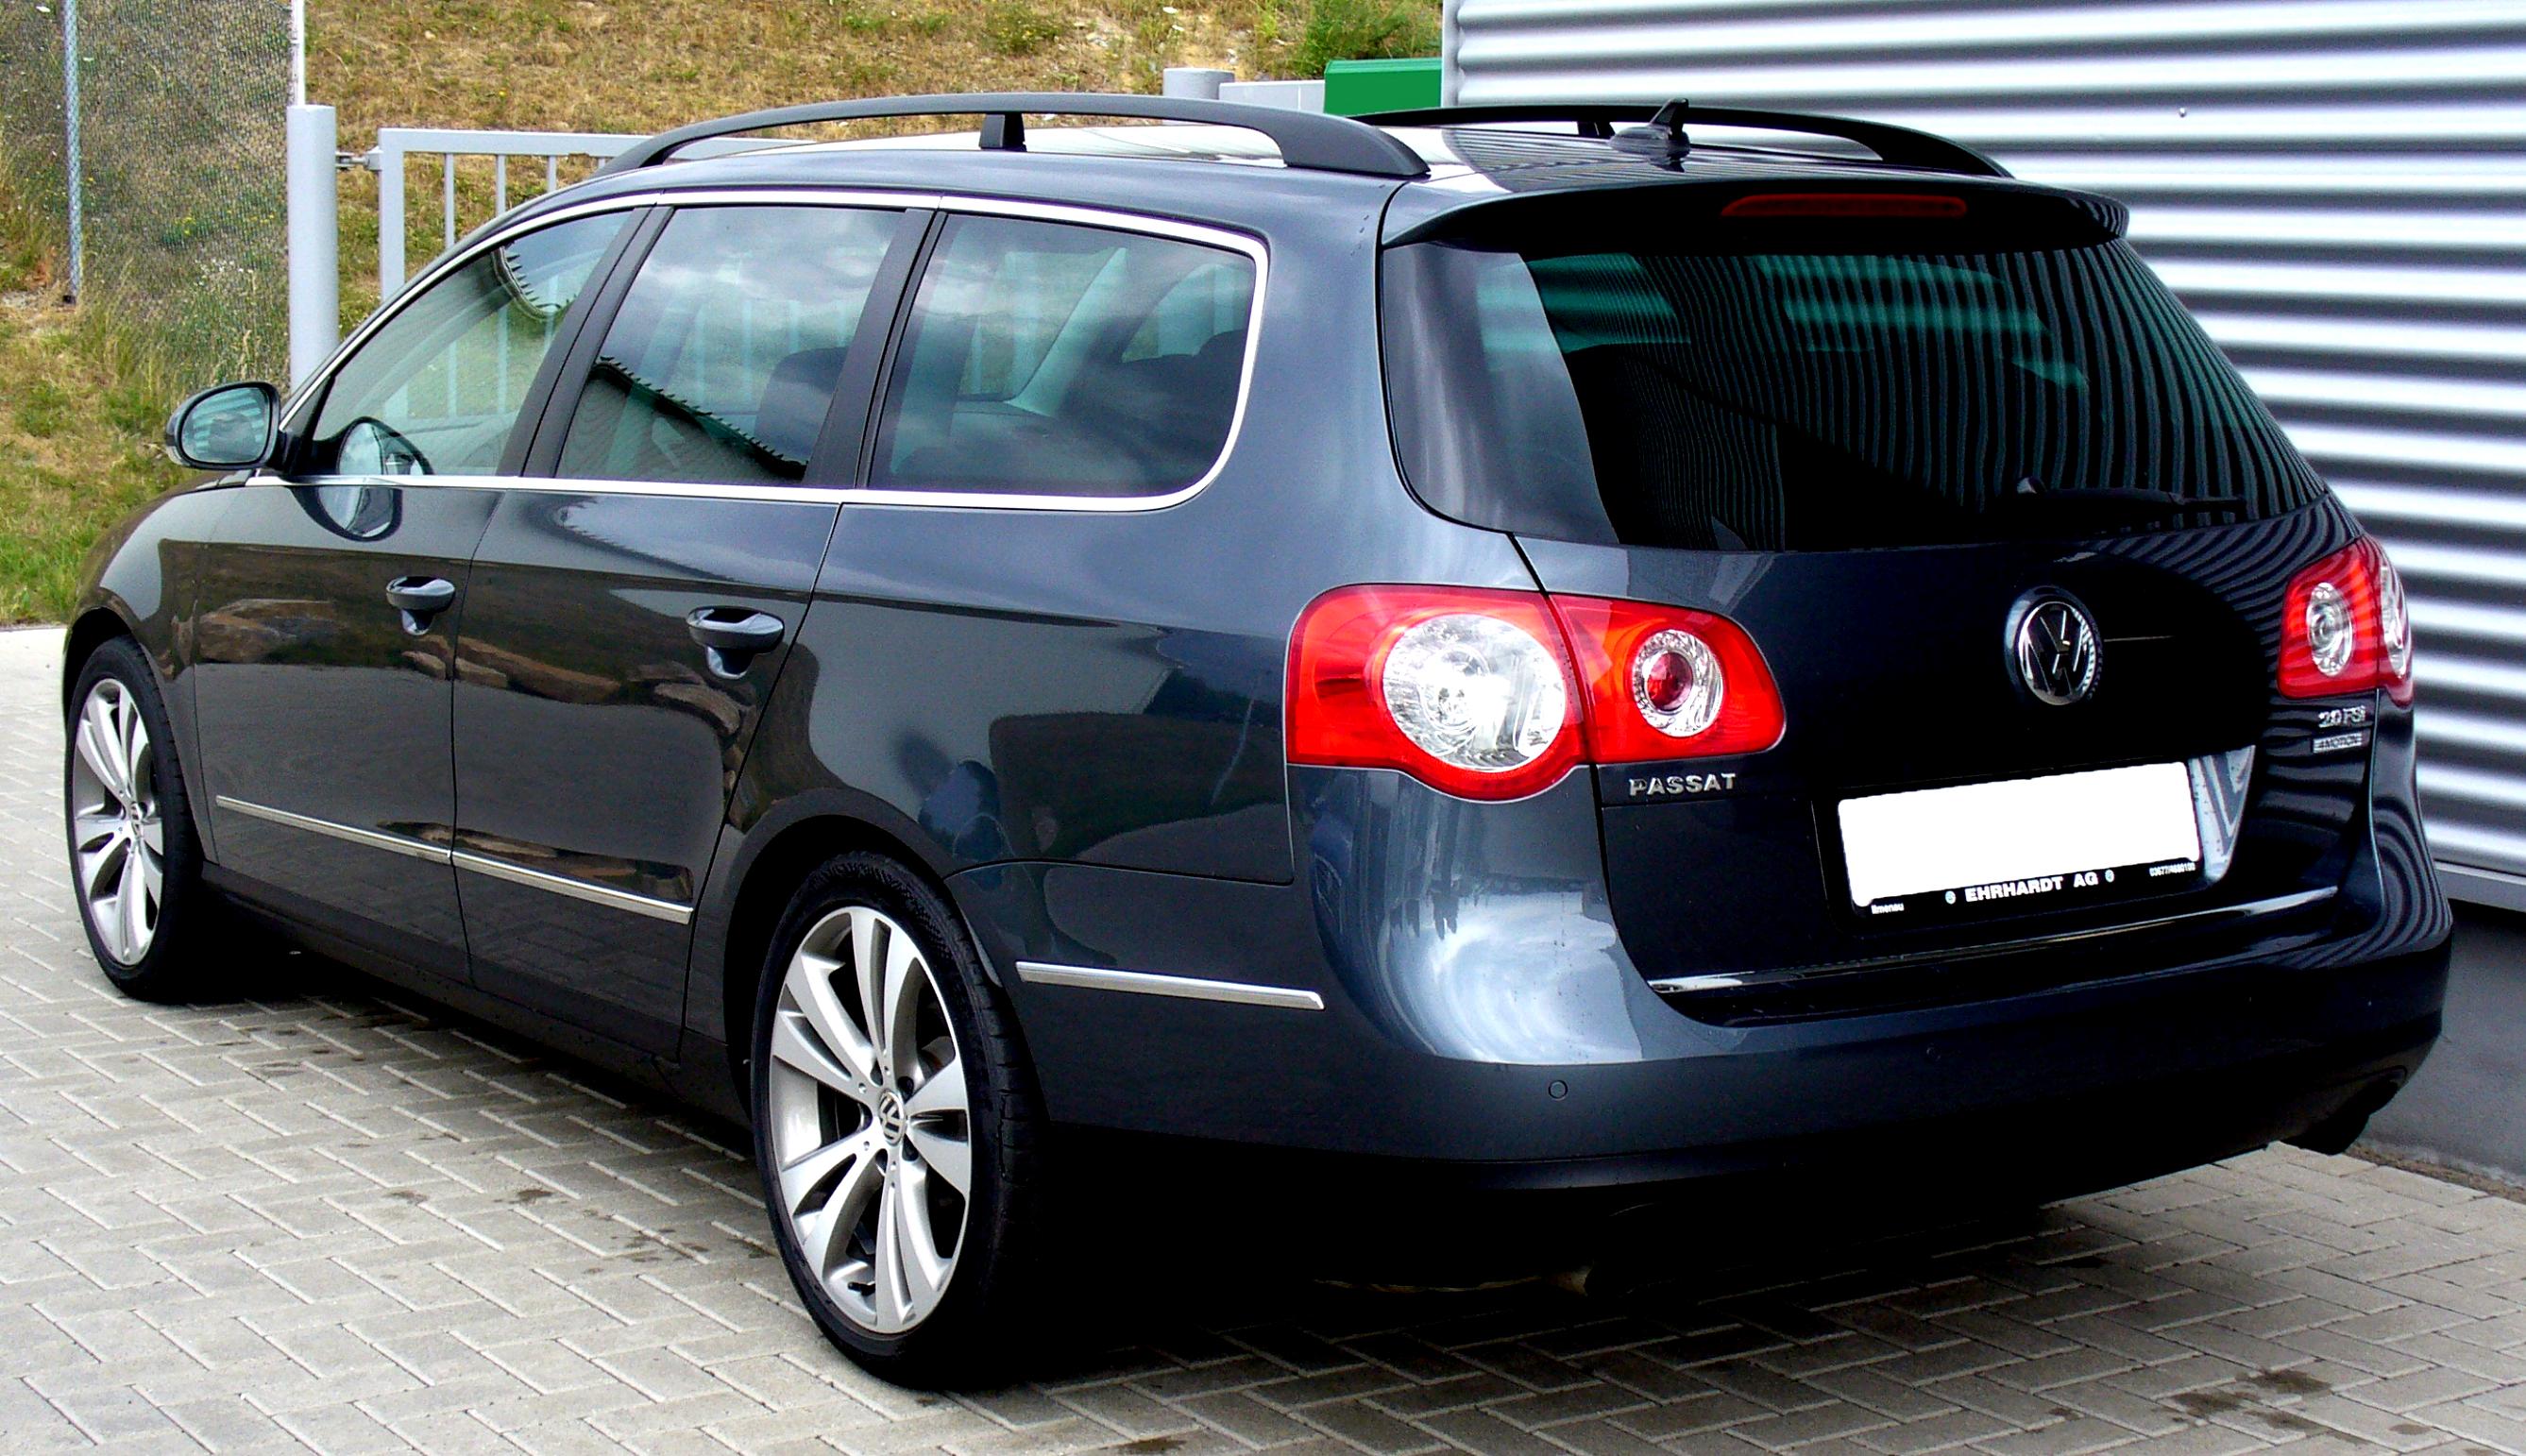 Фольксваген пассат б6 2. Пассат б6 универсал. VW Passat b6 универсал. Фольксваген Passat b6 variant. Фольксваген Пассат универсал 2010.